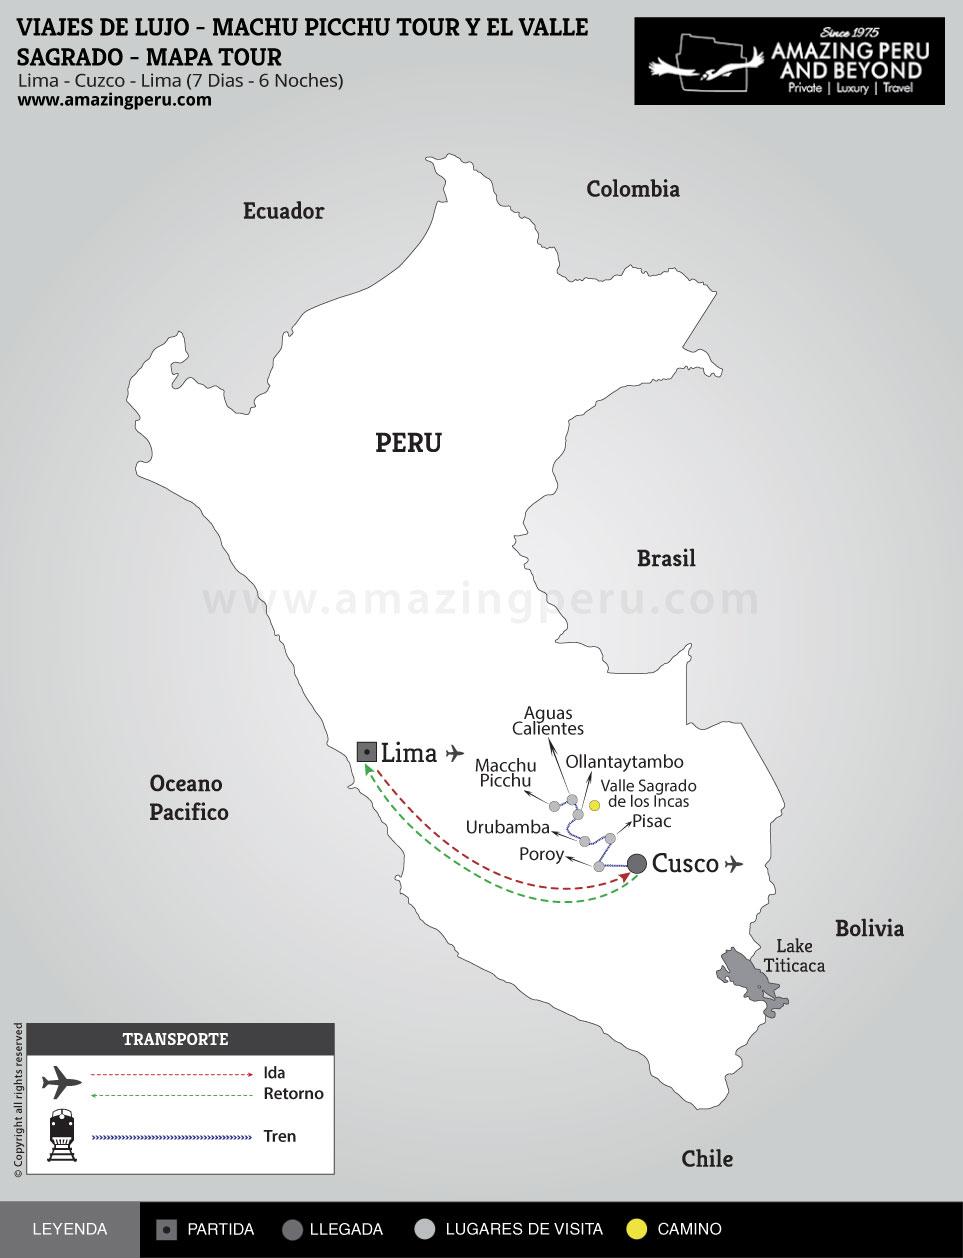 Viajes de Lujo Per: Machu Picchu y el Valle Sagrado